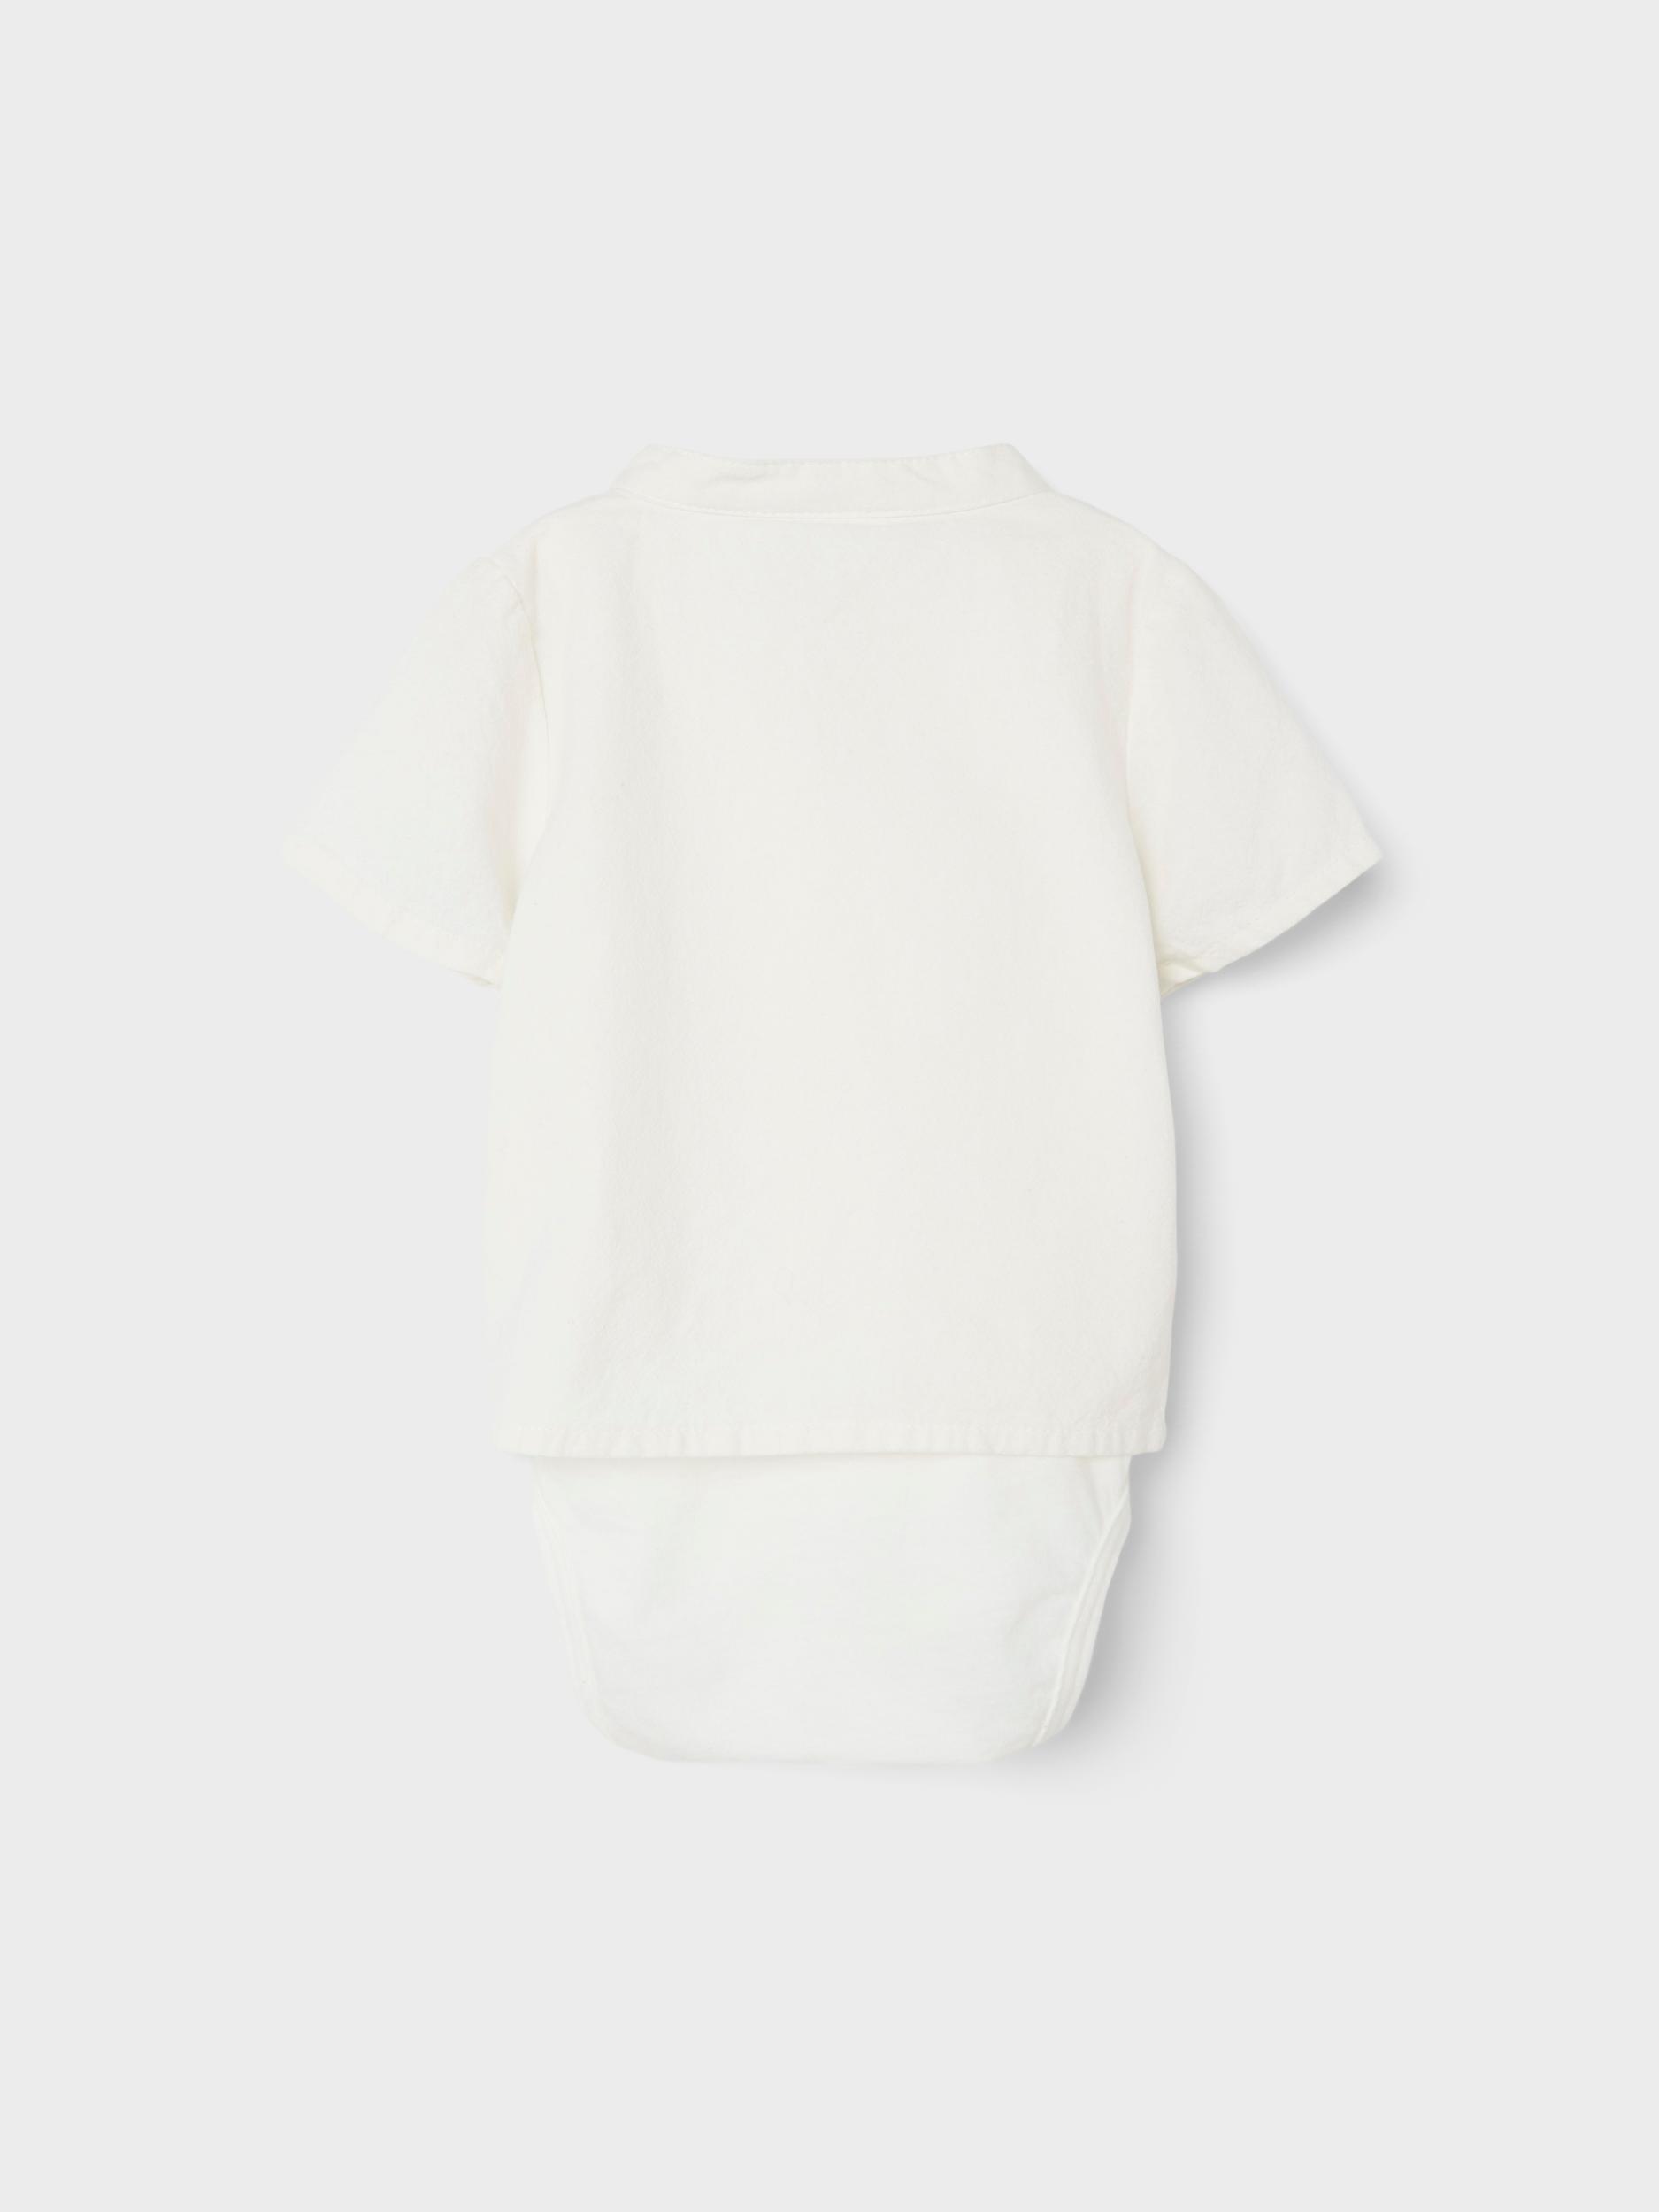  Skjorte, White Alyssum, 62 cm